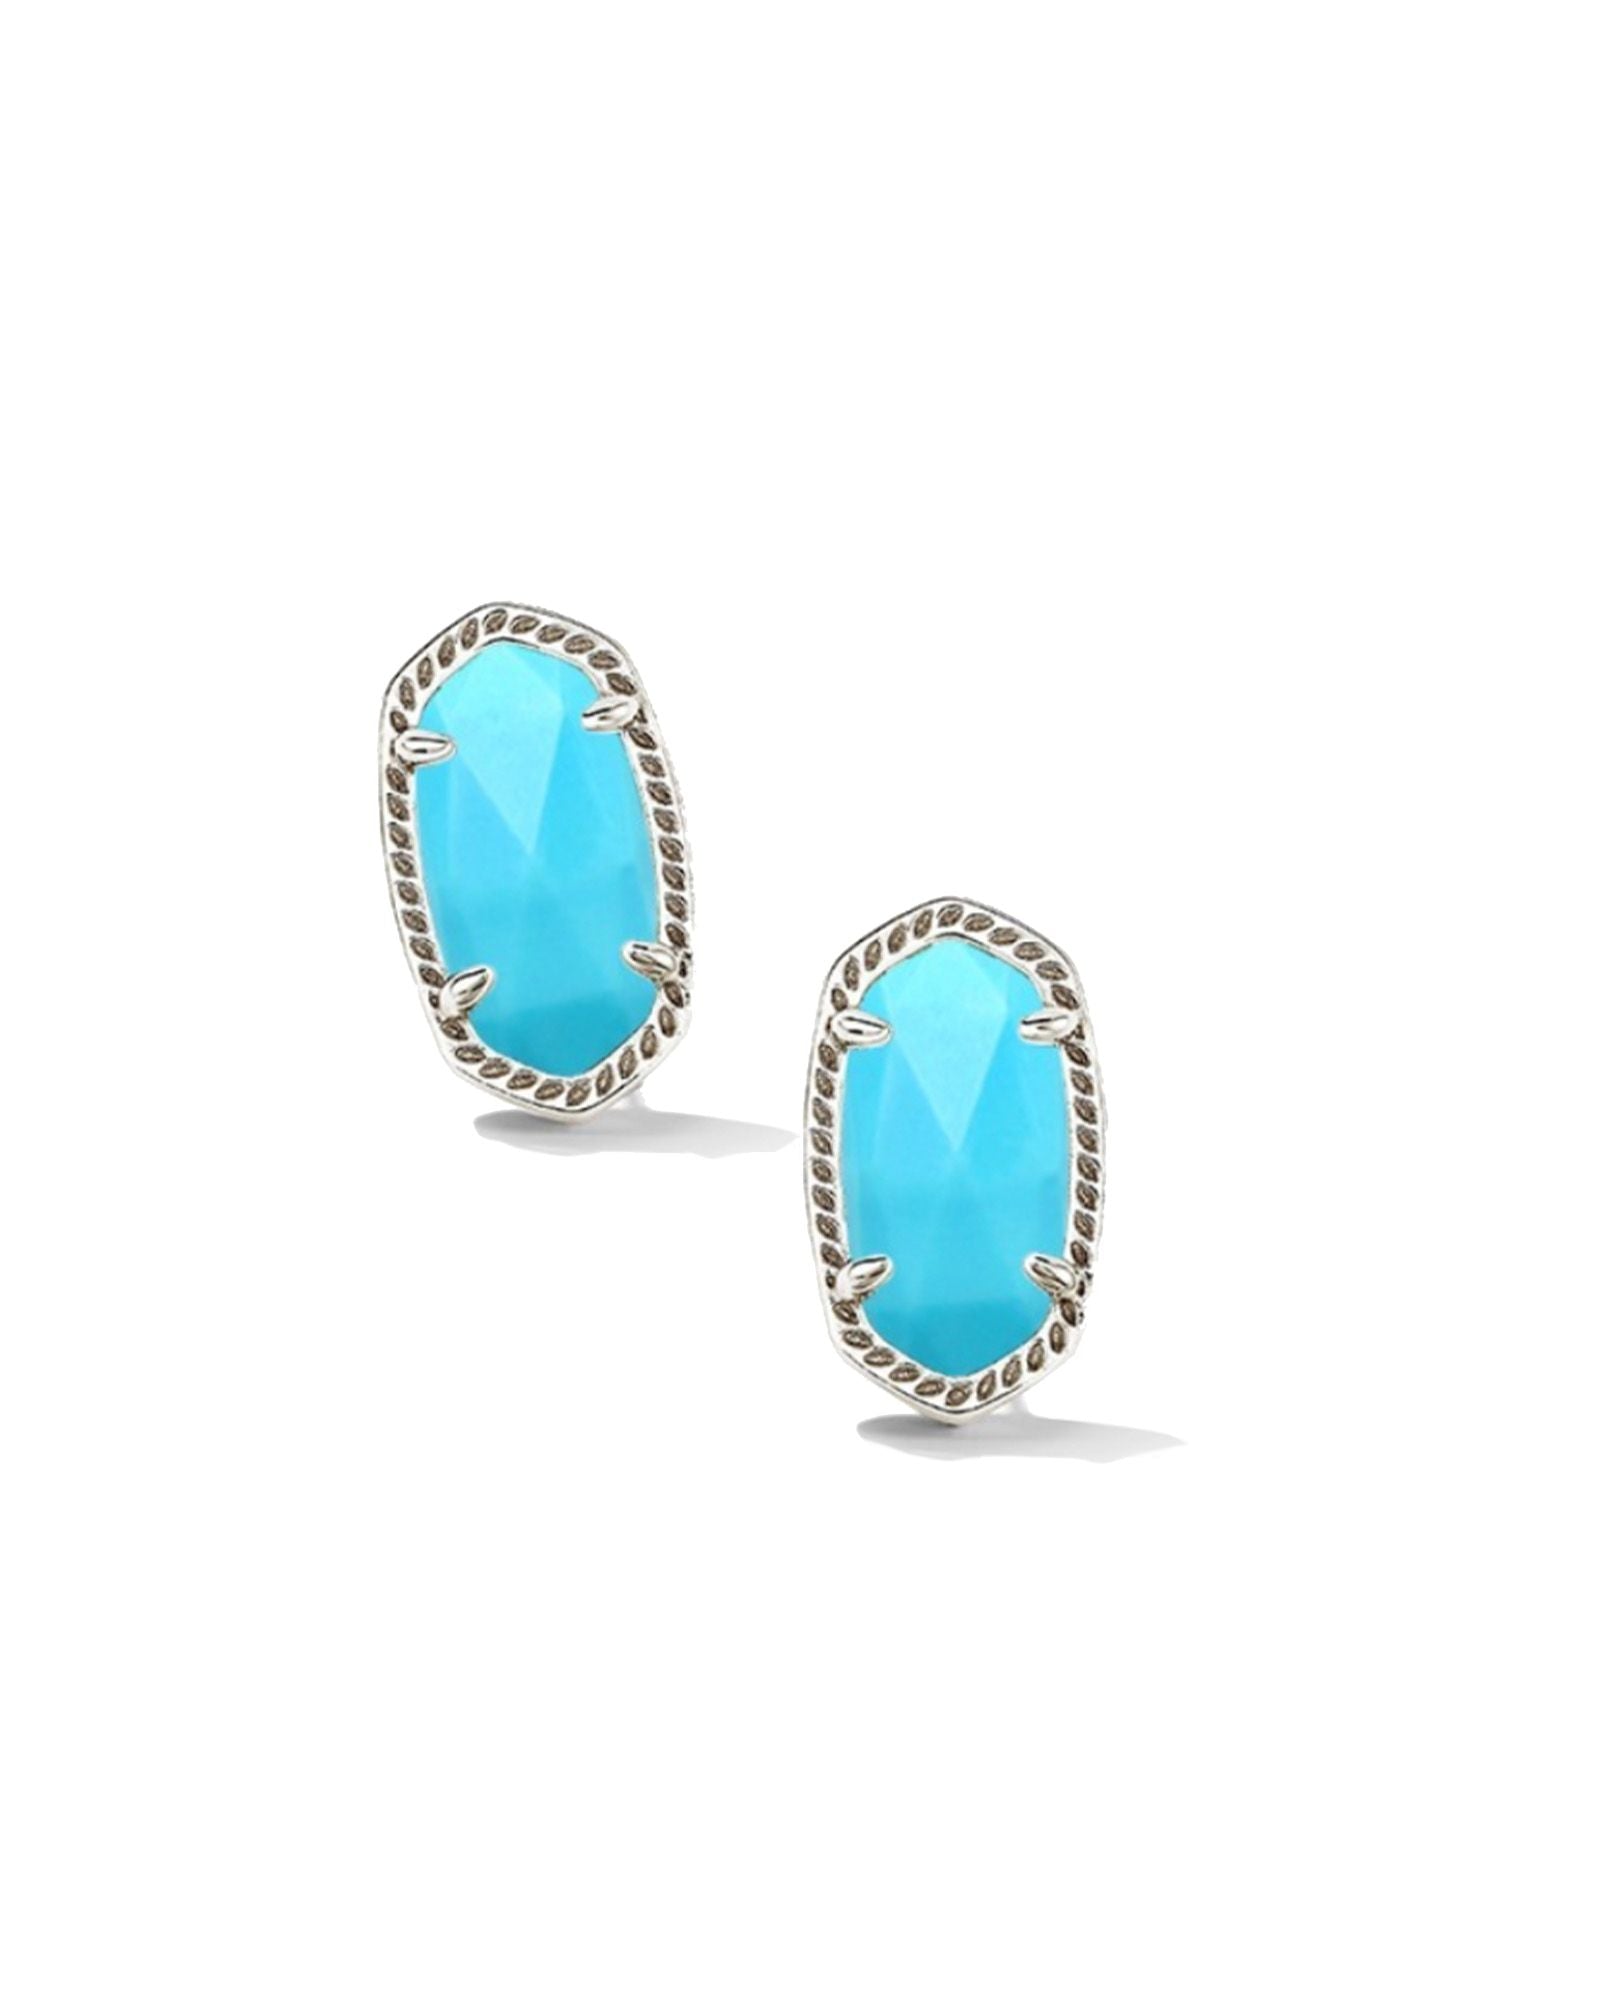 Kendra Scott Ellie Stud Earrings Silver Turquoise Magnesite-Earrings-Kendra Scott-Created - 01/15/24, E6031RHD-The Twisted Chandelier